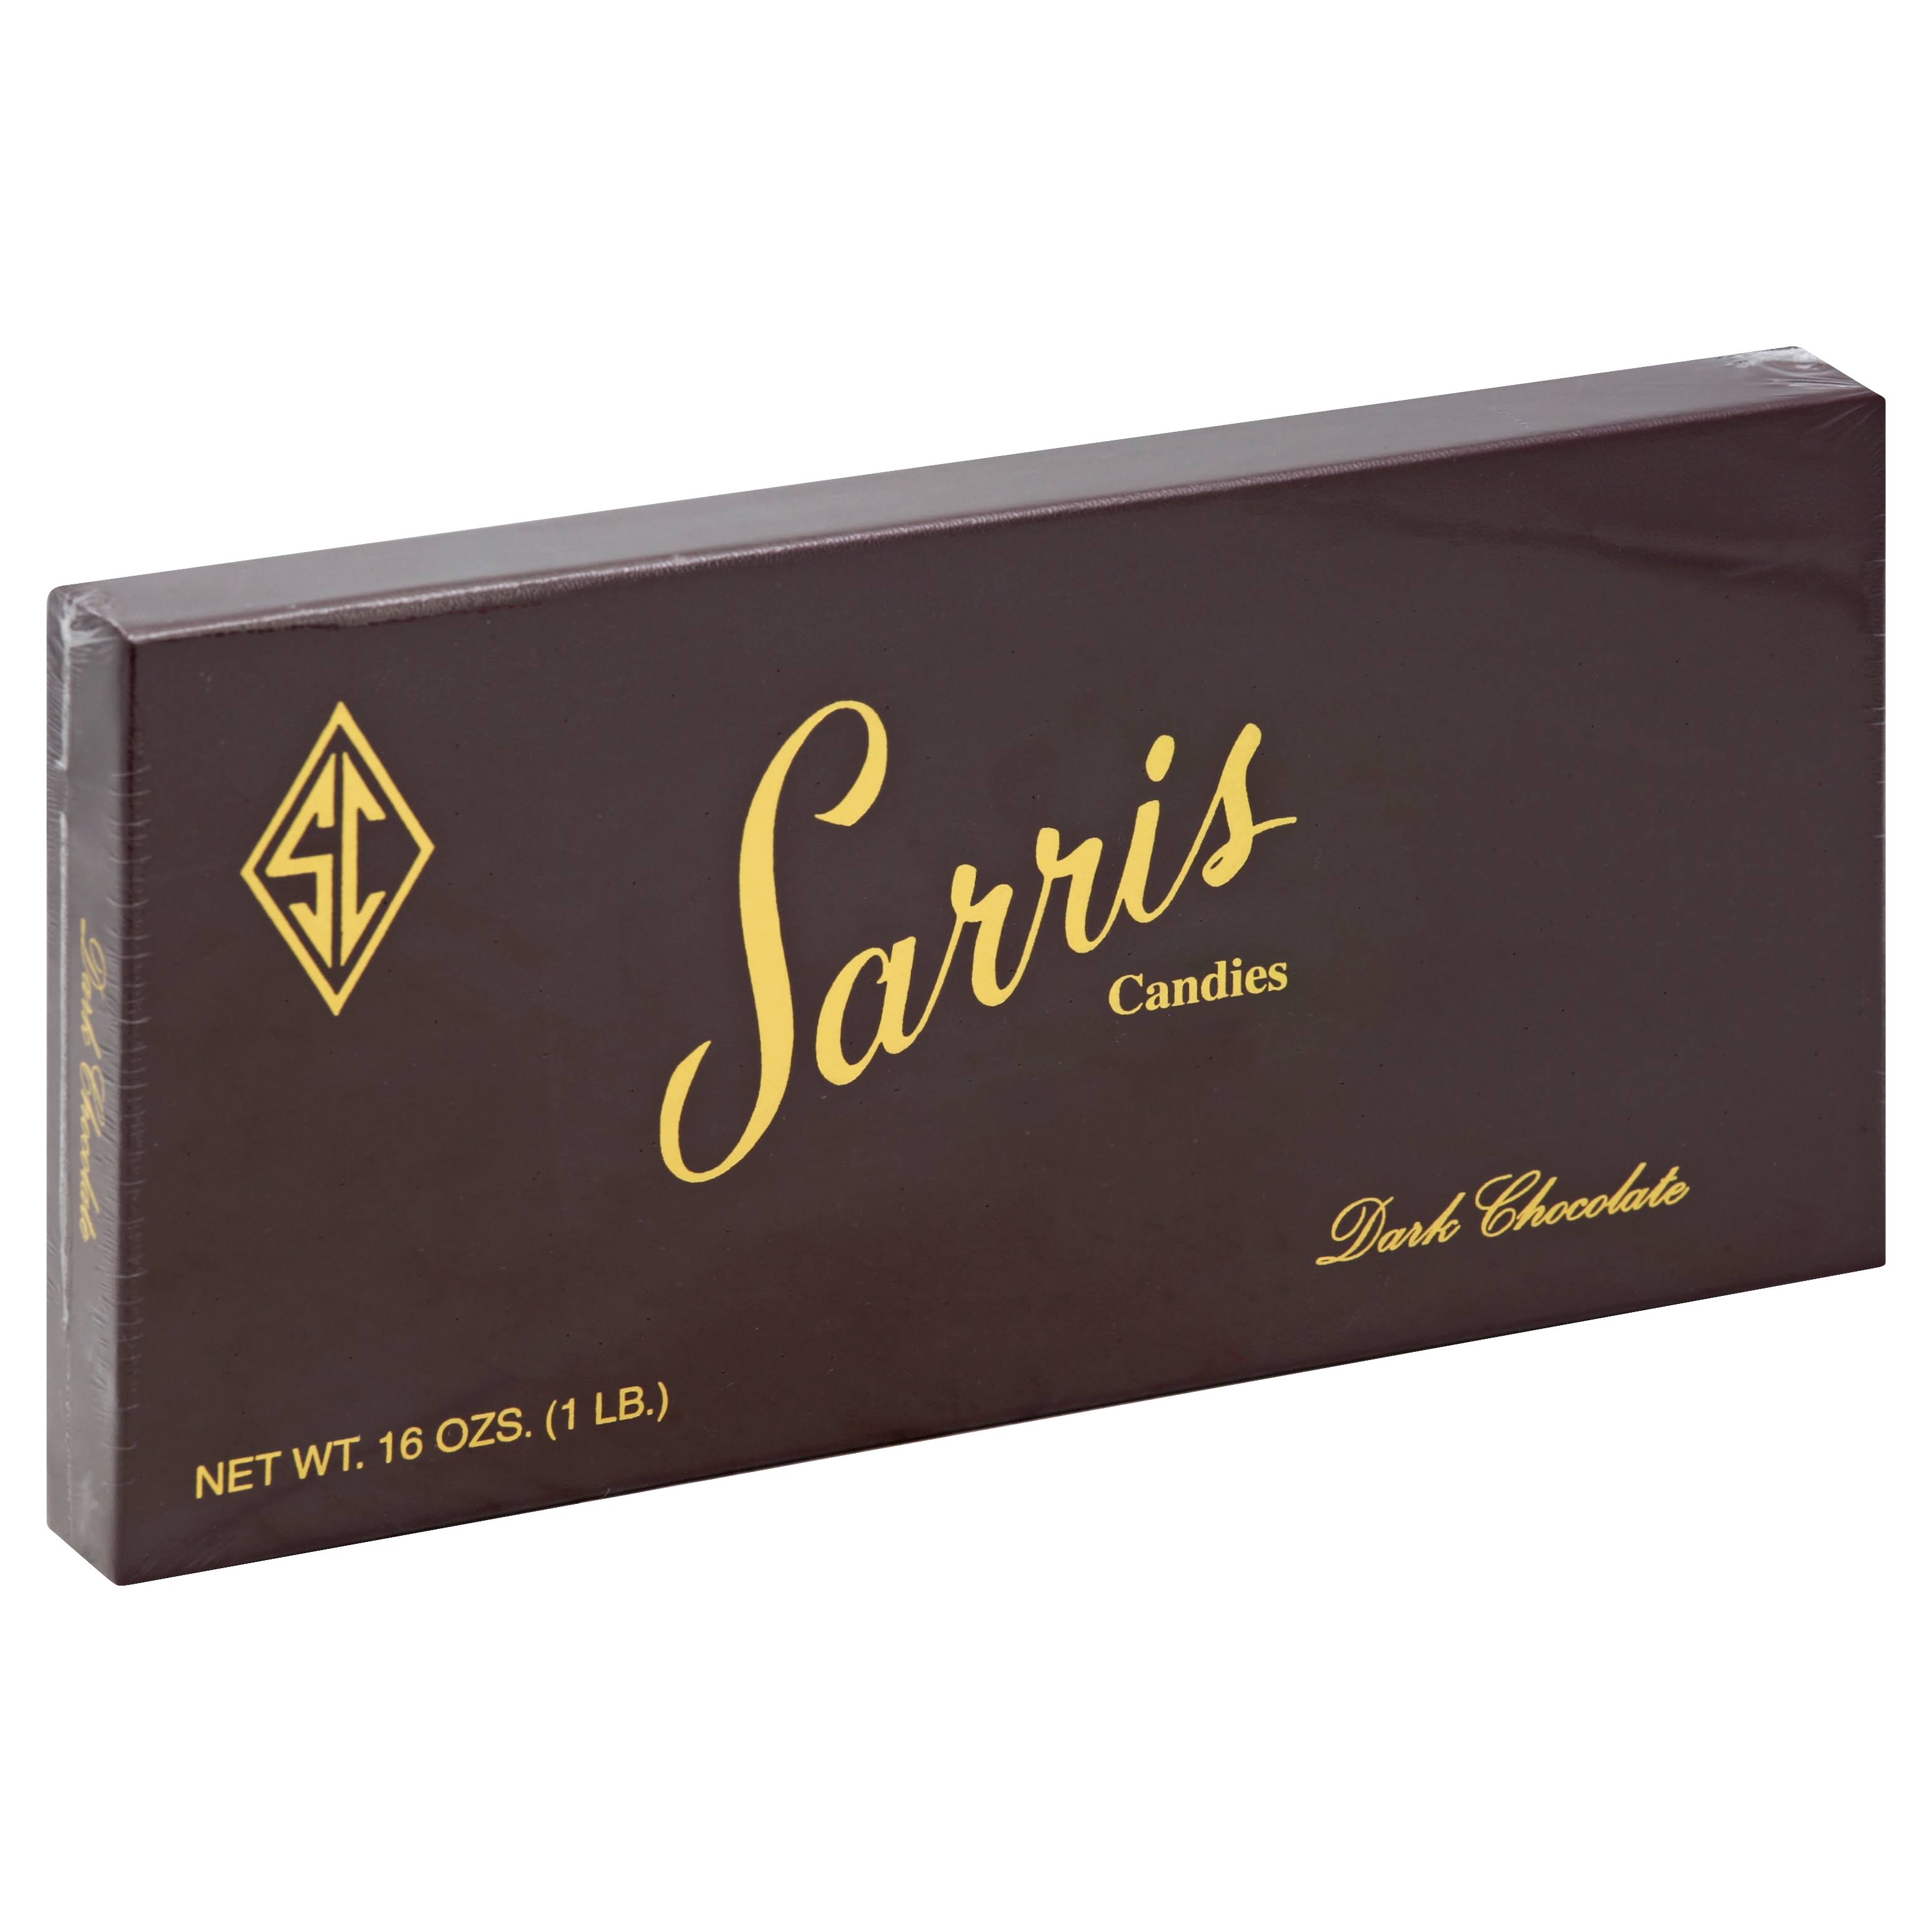 Sarris Candies Candies, Dark Chocolate, All Dark Assortment - 16 oz